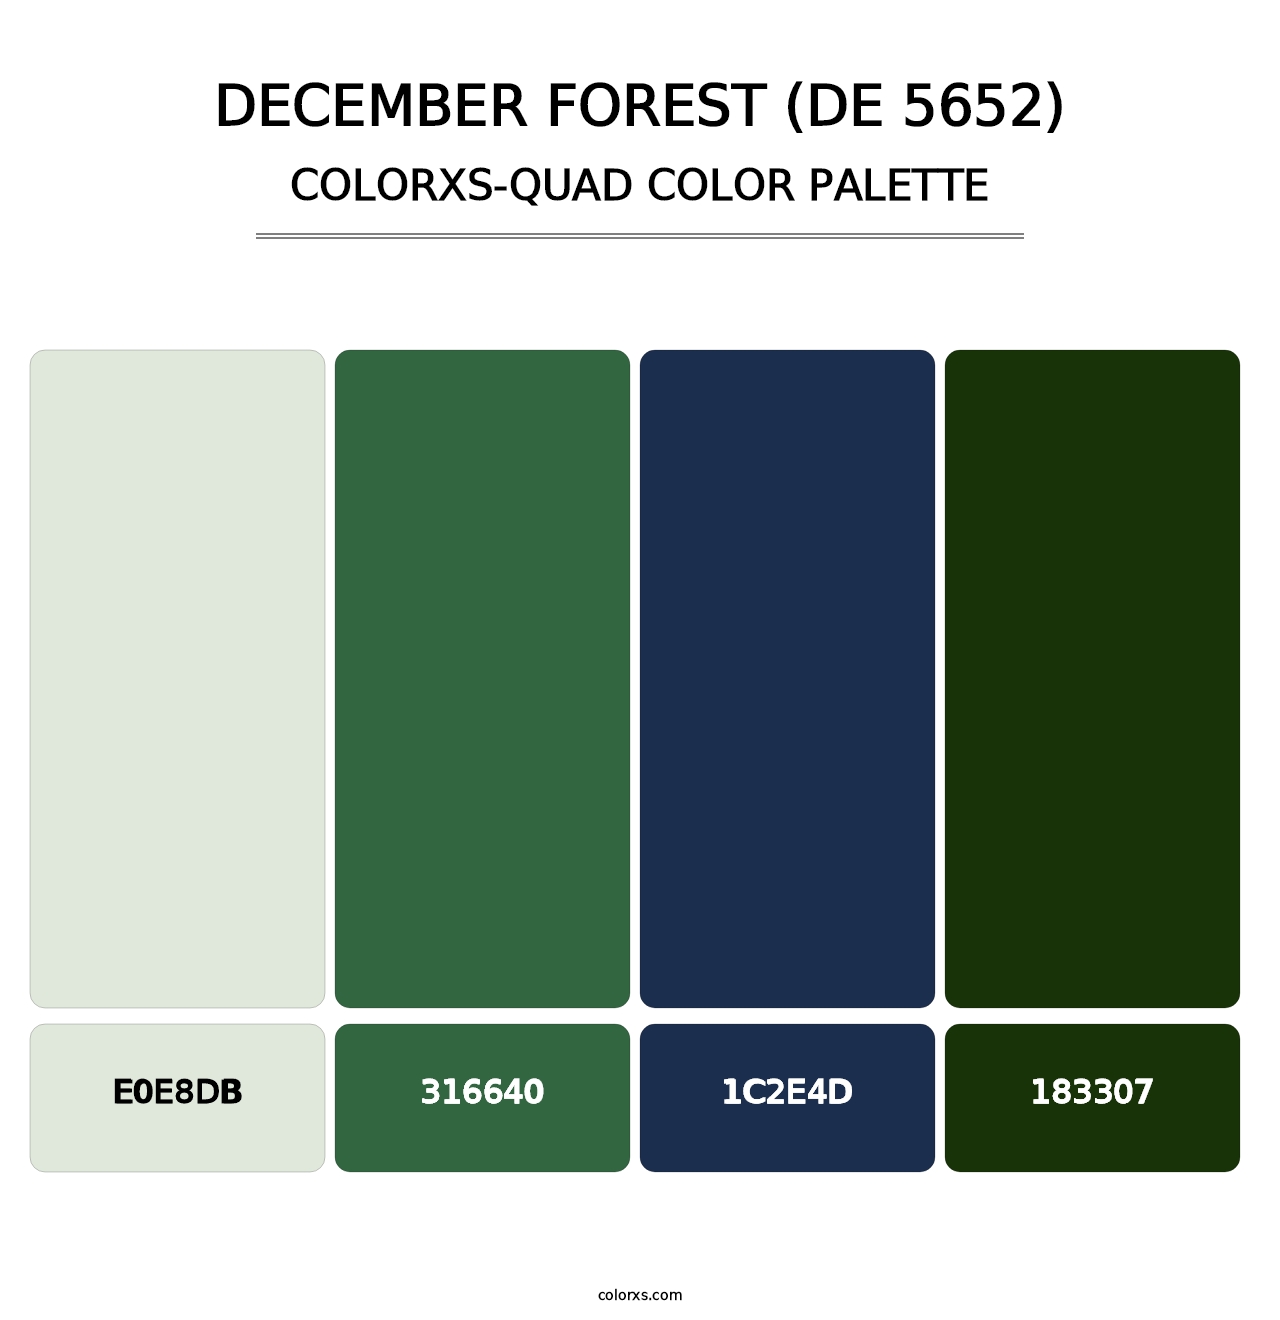 December Forest (DE 5652) - Colorxs Quad Palette